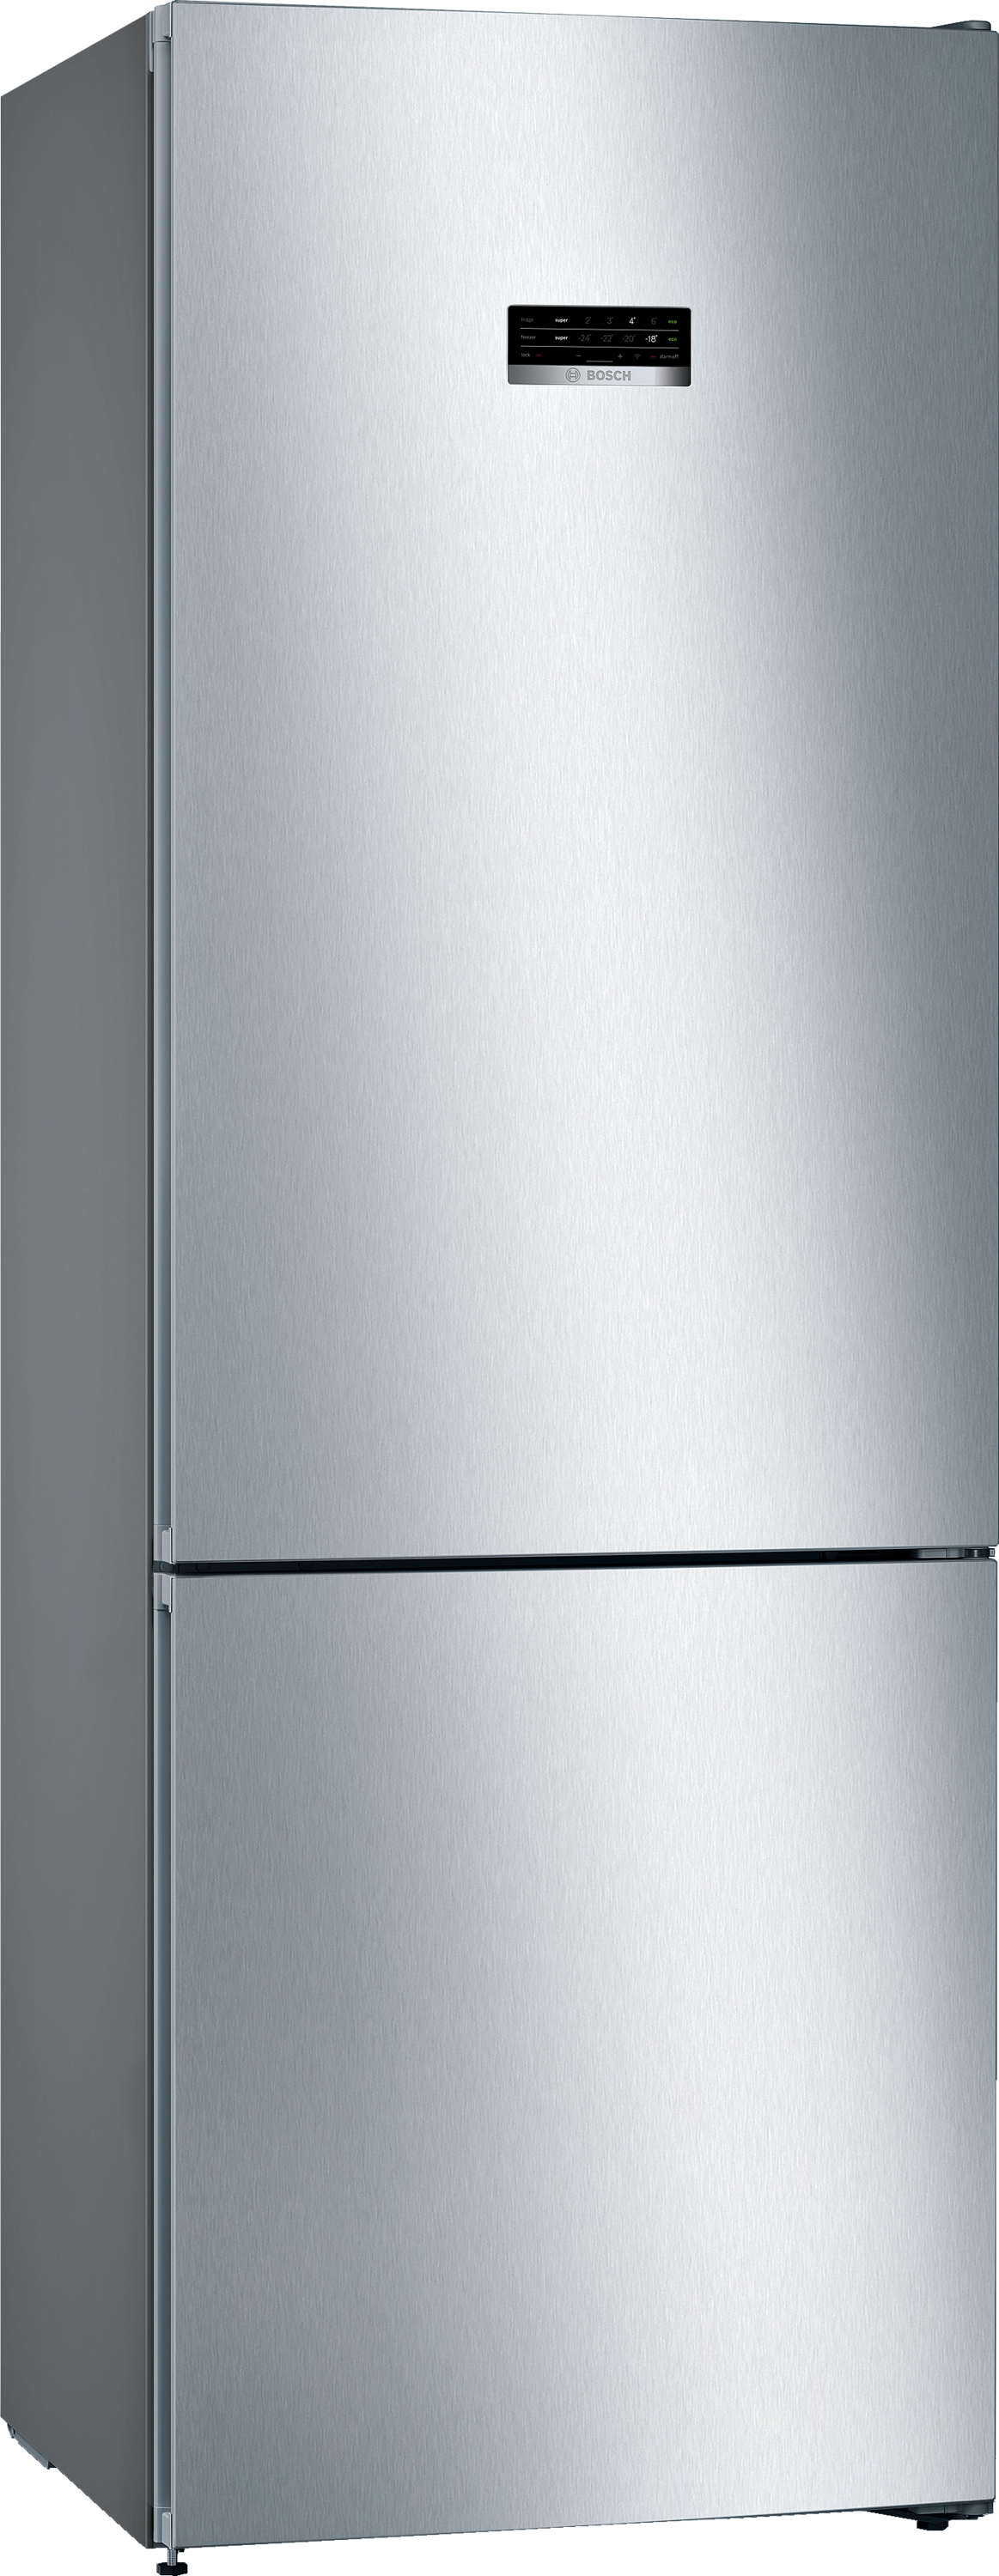 KGN49XLEA Combină frigorifică independentă , 5 ANI GARANTIE,203 x 70 cm InoxLook. Clasa Energetica E